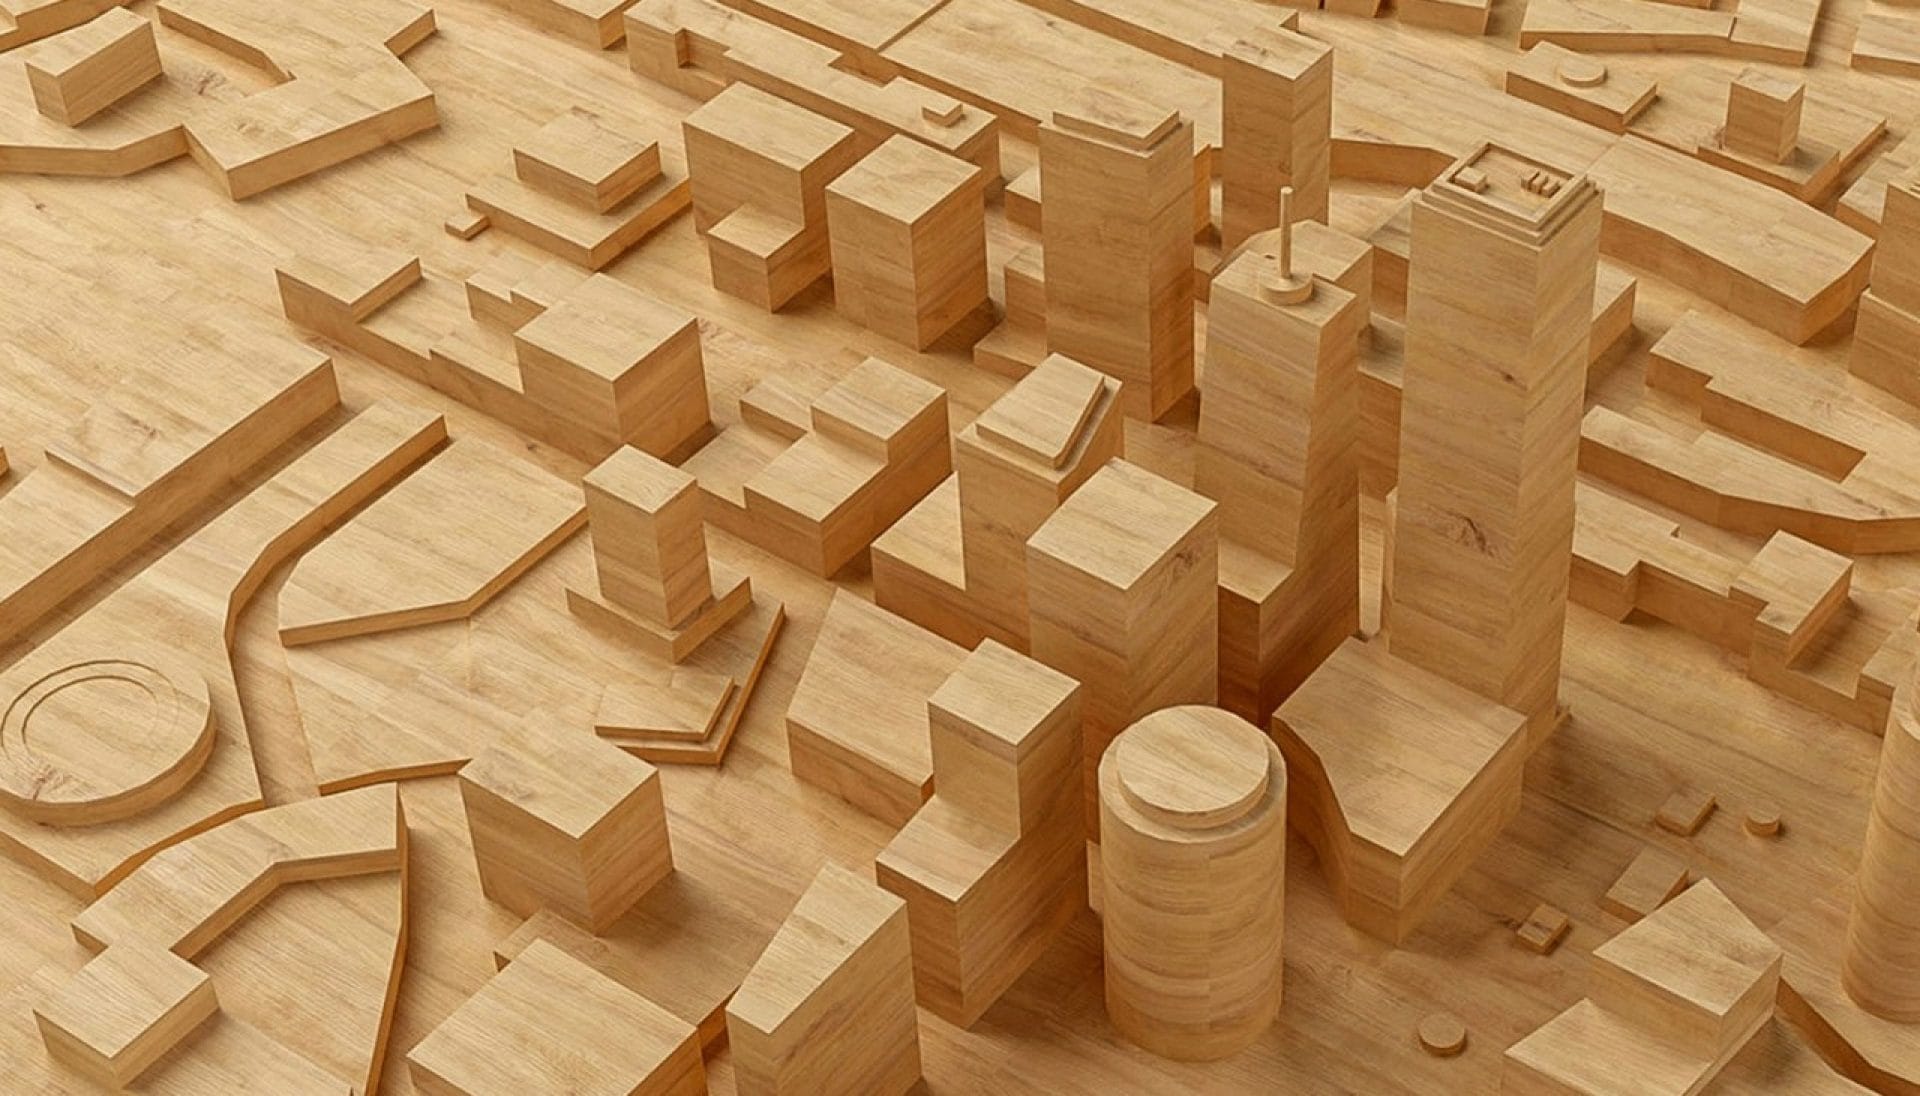 Grafik von einigen Gebäuden, die dreidimensional in ein Holzbrett geschnitzt wurden